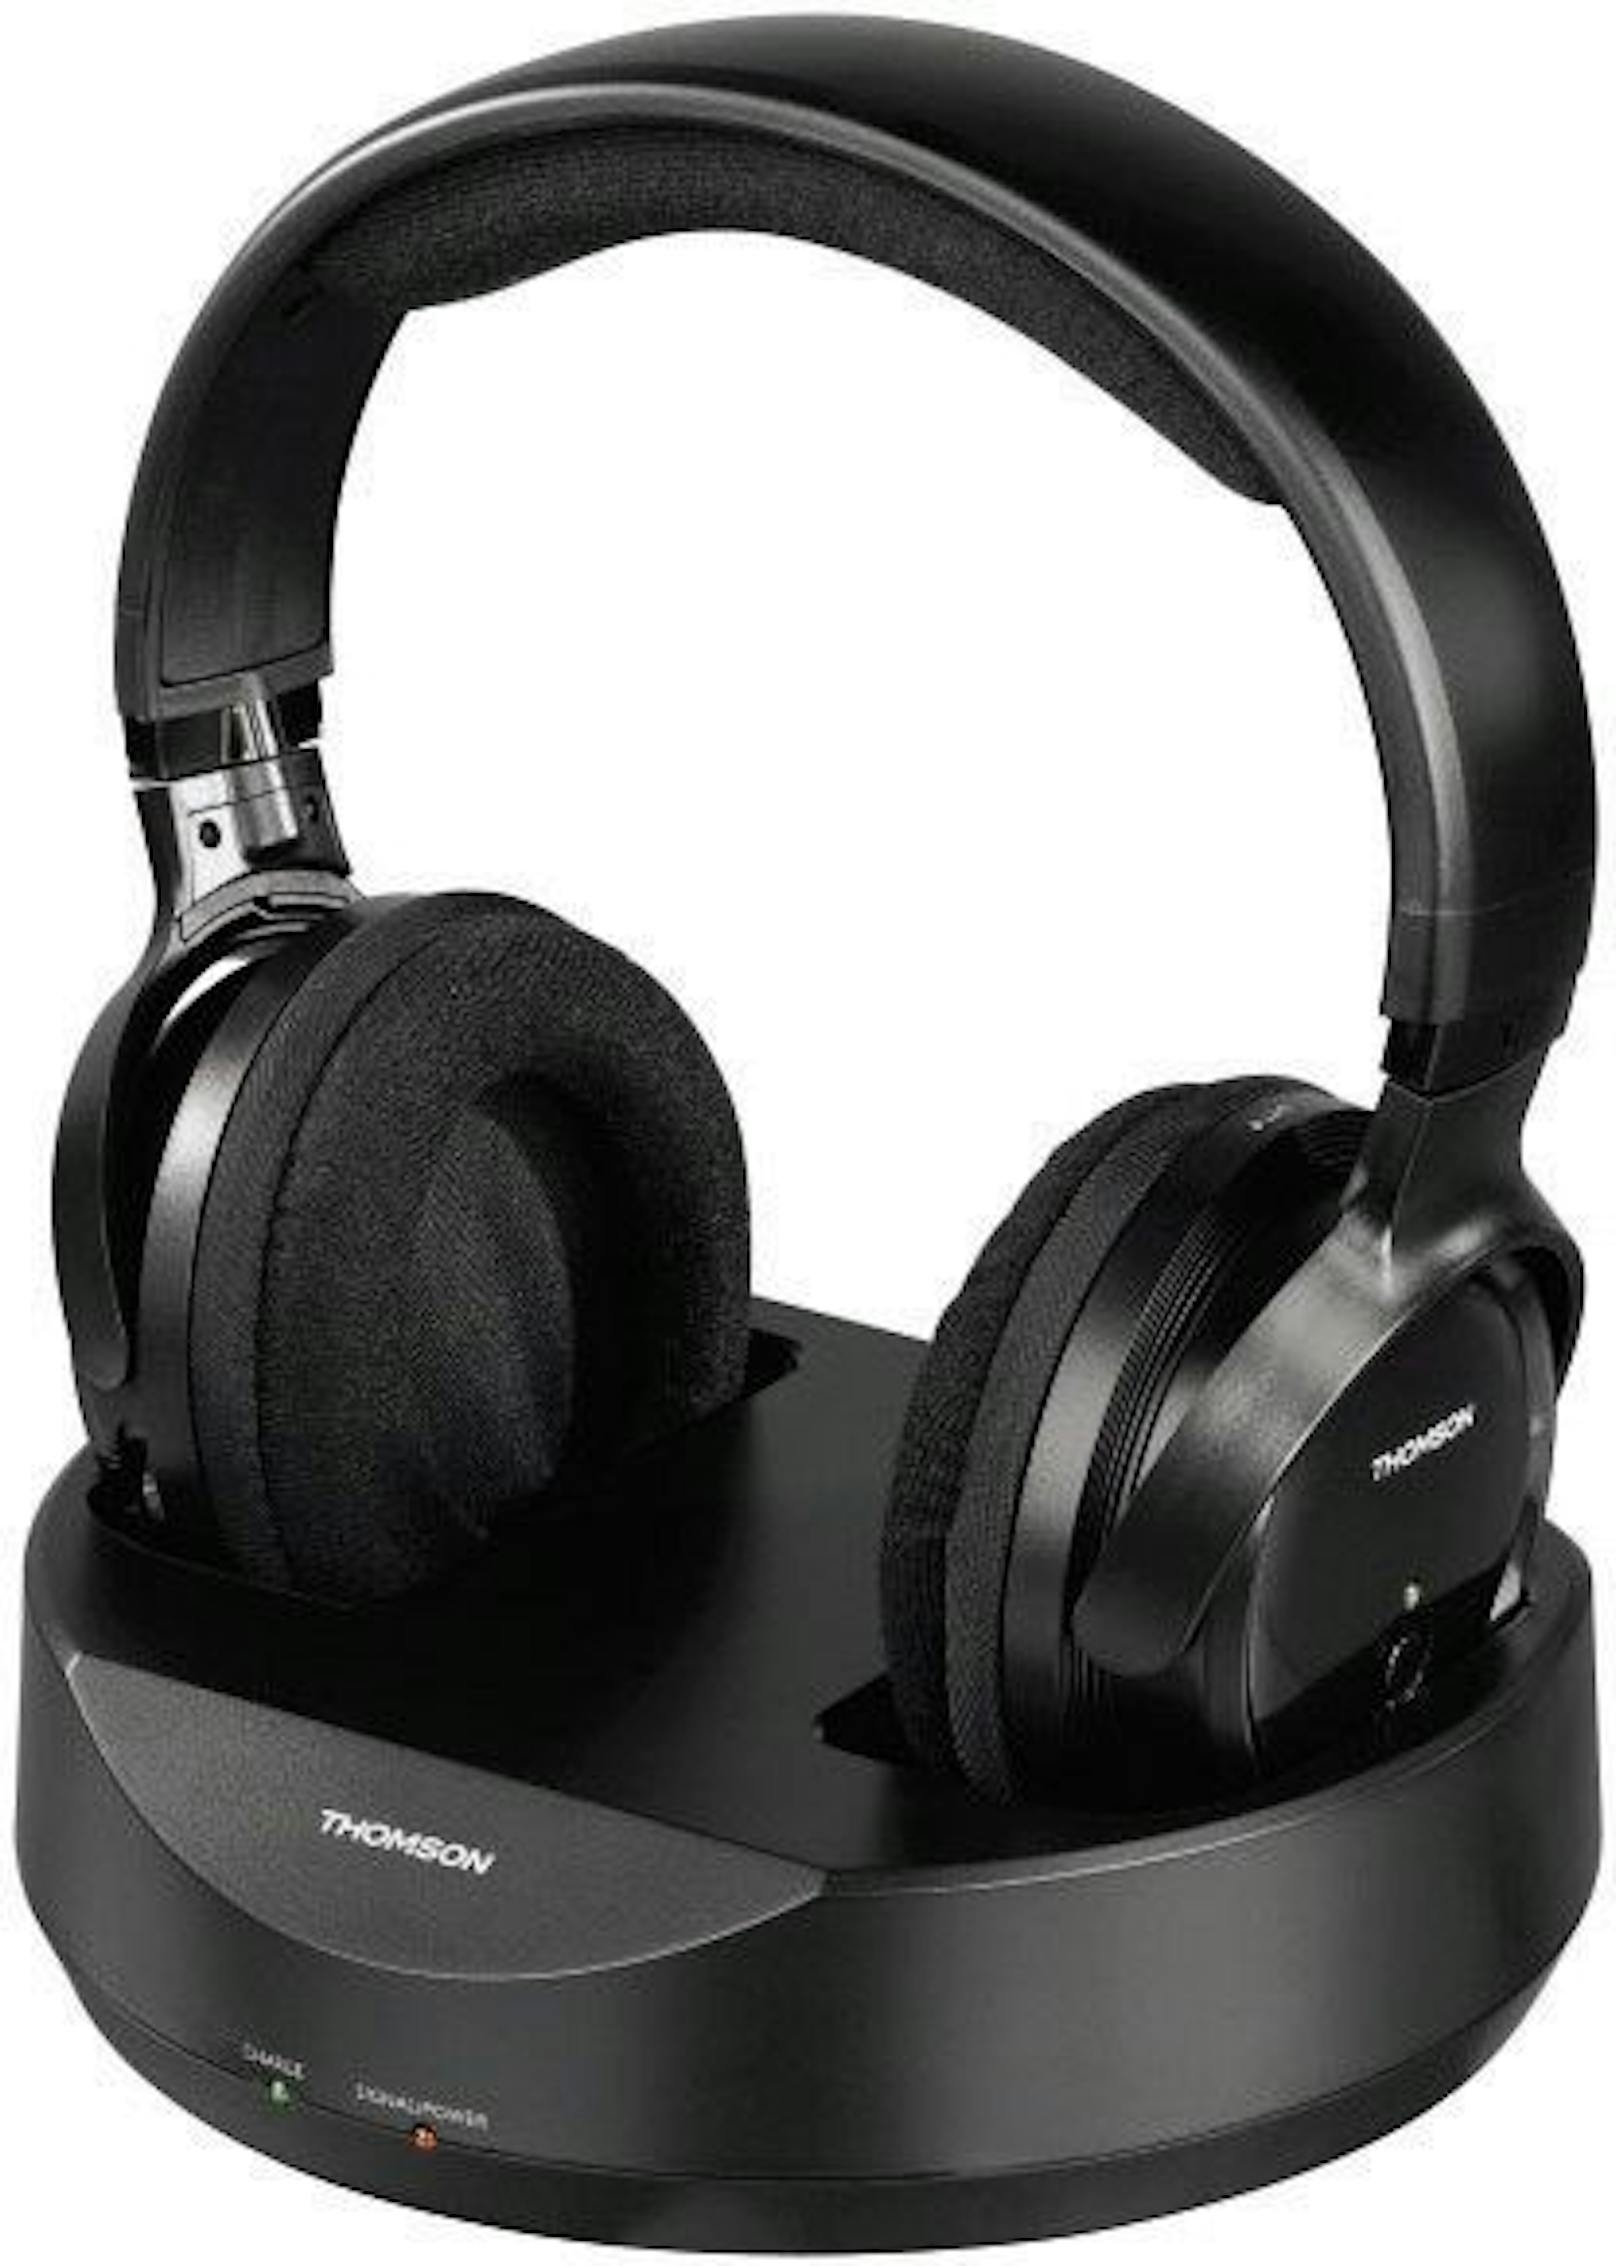 Musik oder Filme kabellos genießen mit den Thomson WHP3001BK Wireless Kopfhörern!